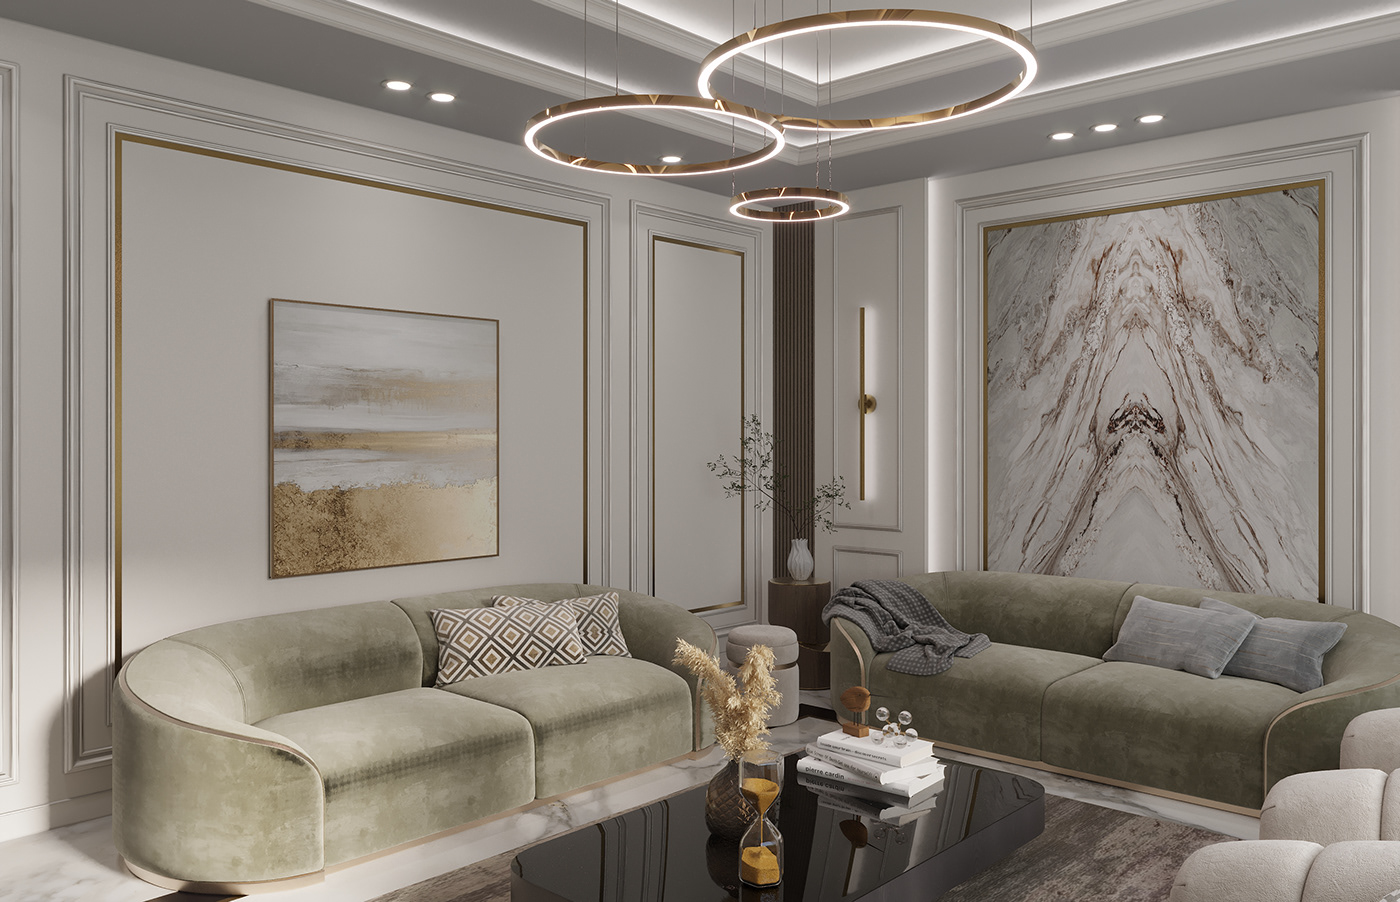 living Interior architecture visualization 3ds max corona design new classic Render interior design 